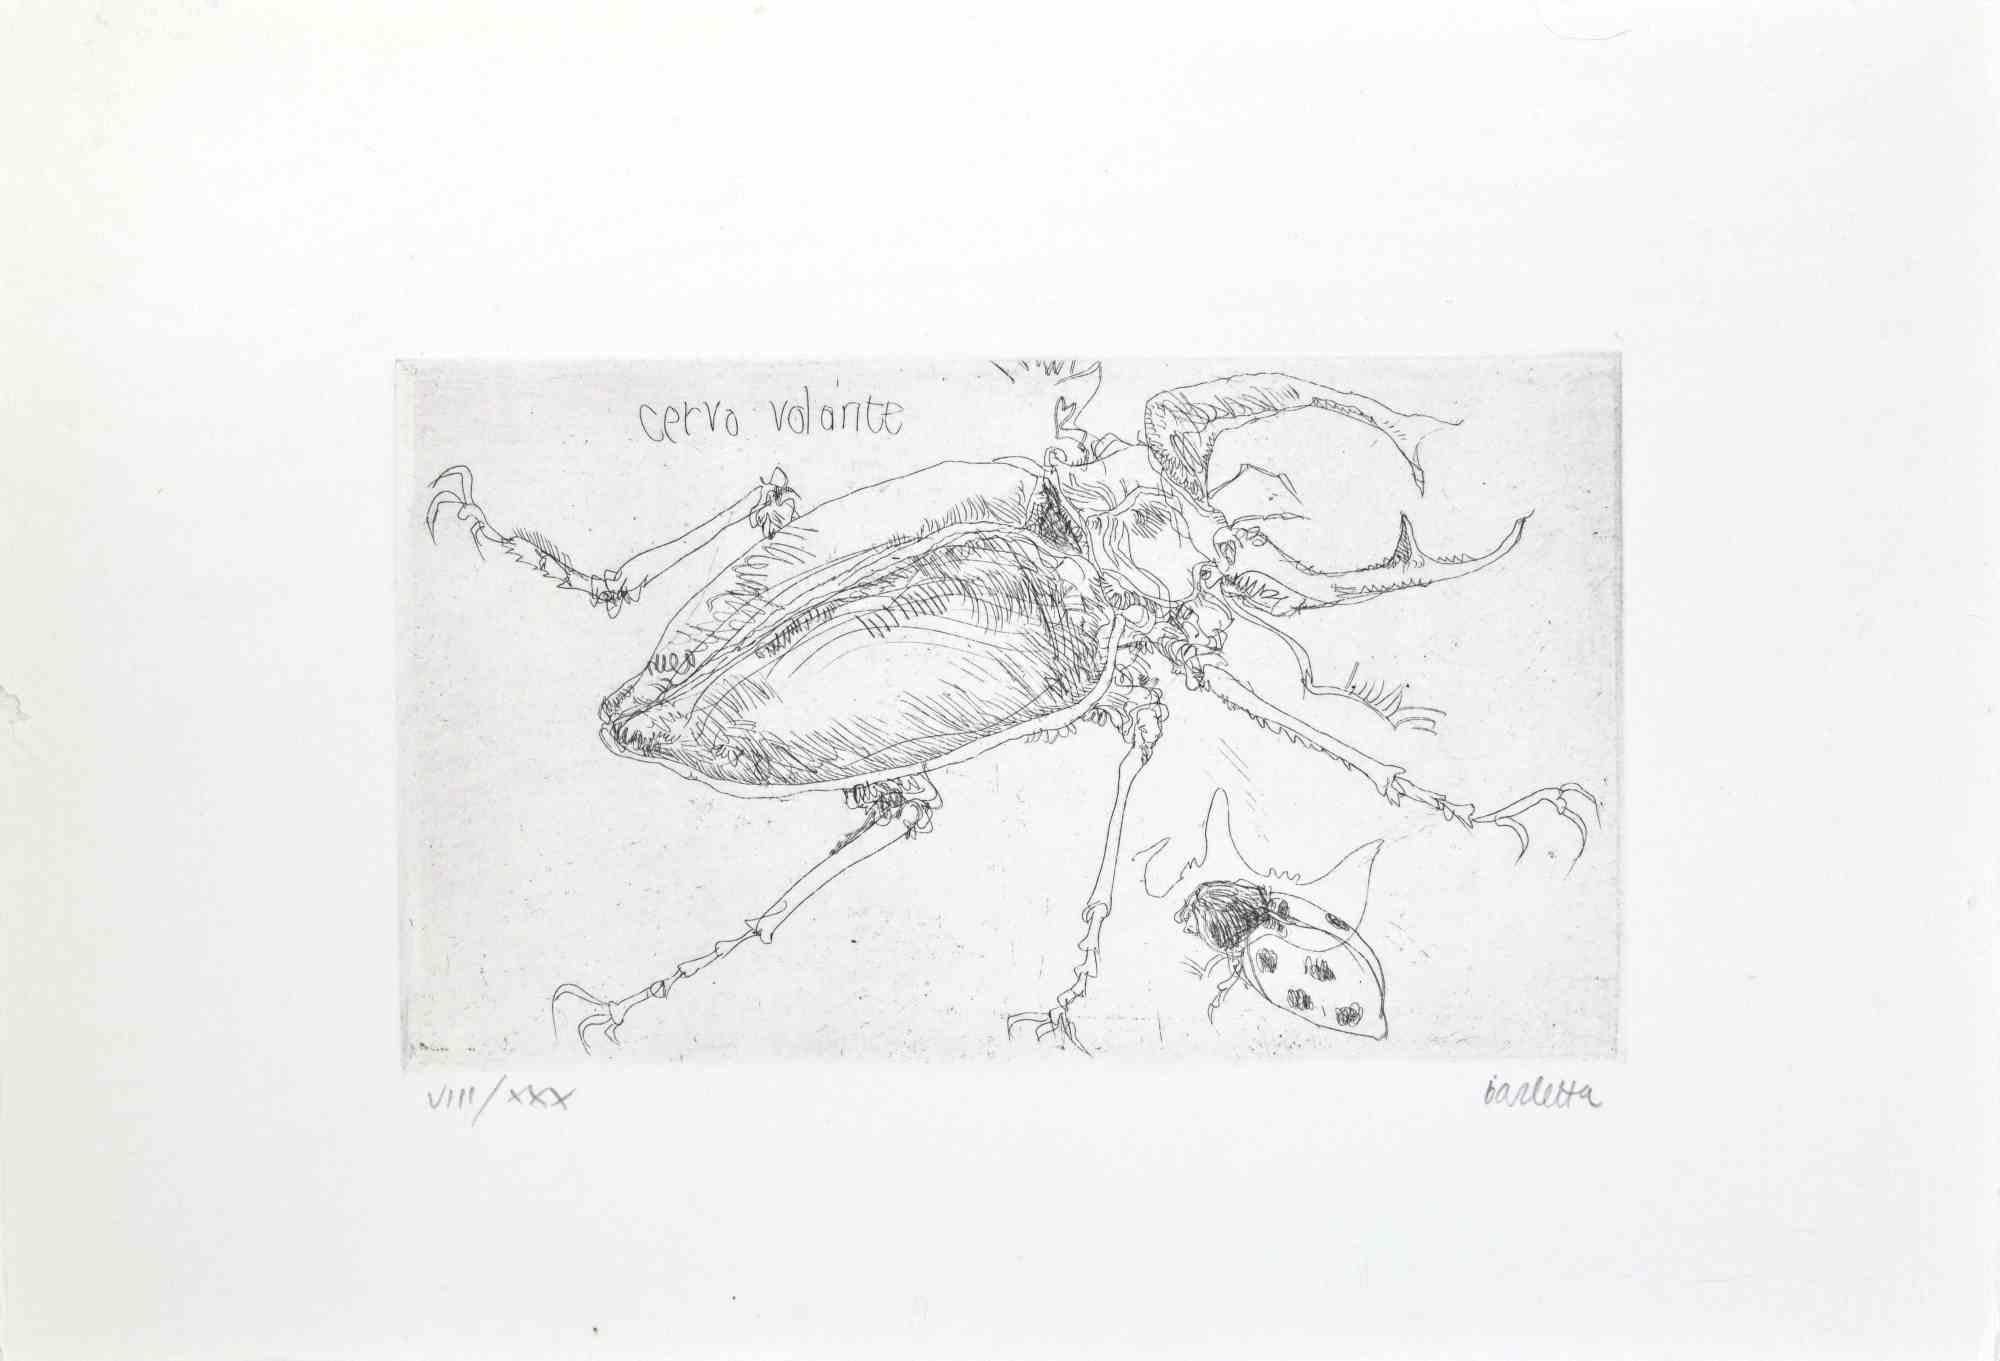 Insectes  est une gravure réalisée par  Sergio Barletta en 1974.

Signé à la main au crayon en bas à droite. Numérotée en bas à gauche en chiffres romains, de l'édition de XXX tirages.

Titre en italien en haut à gauche  "Cervo Volante".

Edition